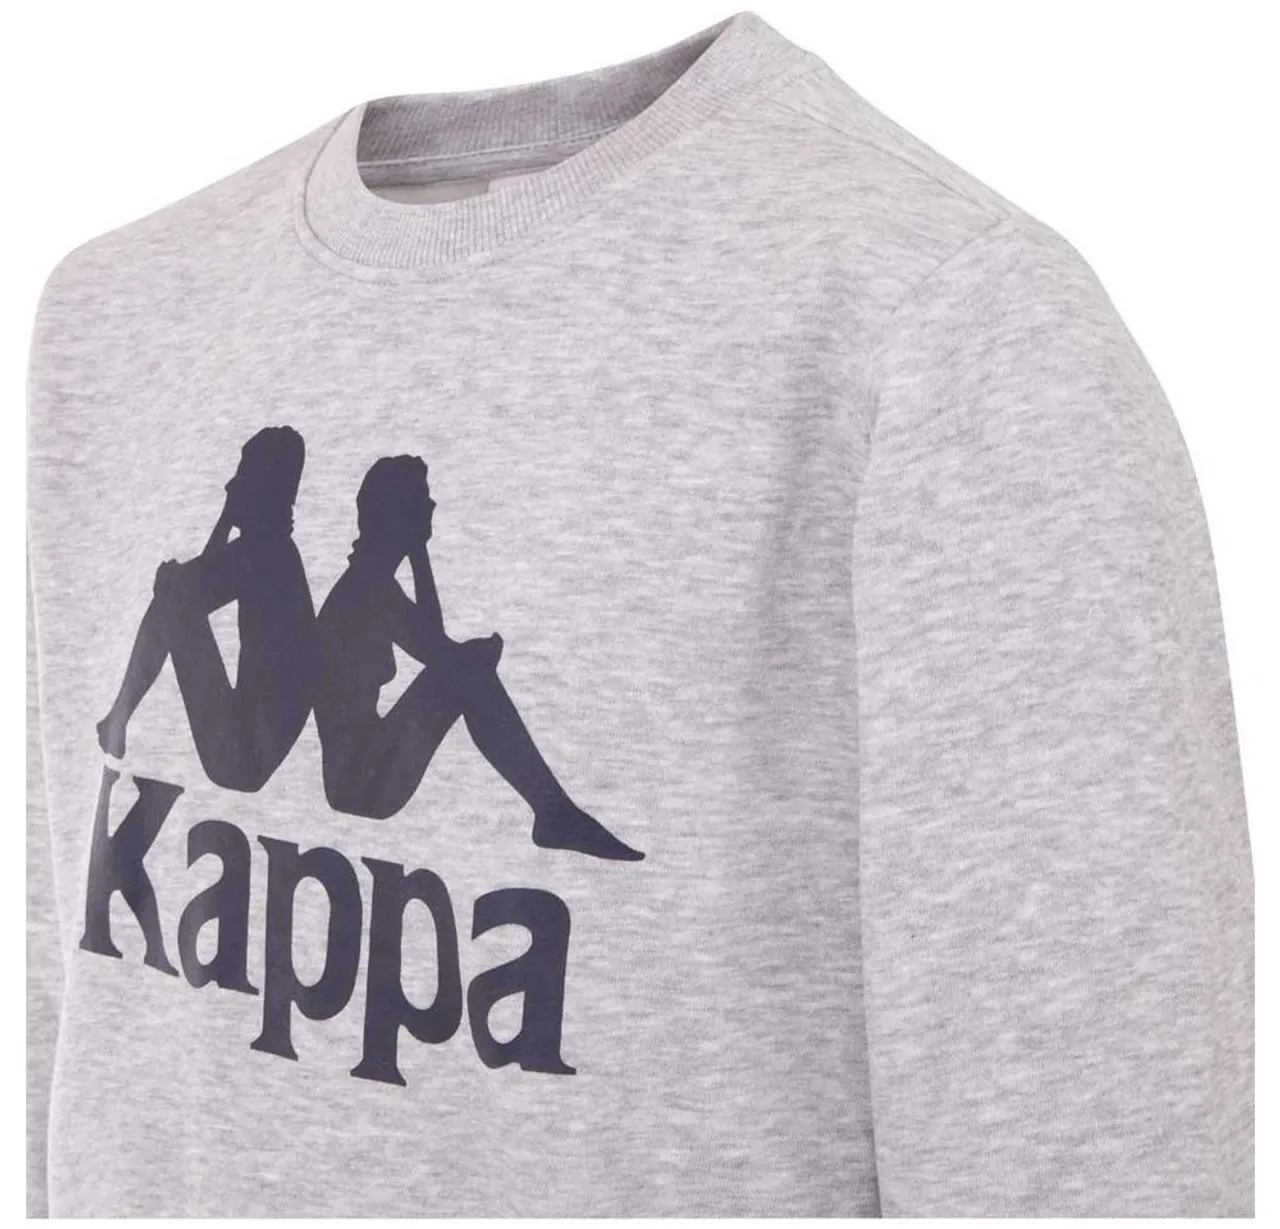 Kappa Sweater in kuscheliger Sweat-Qualität